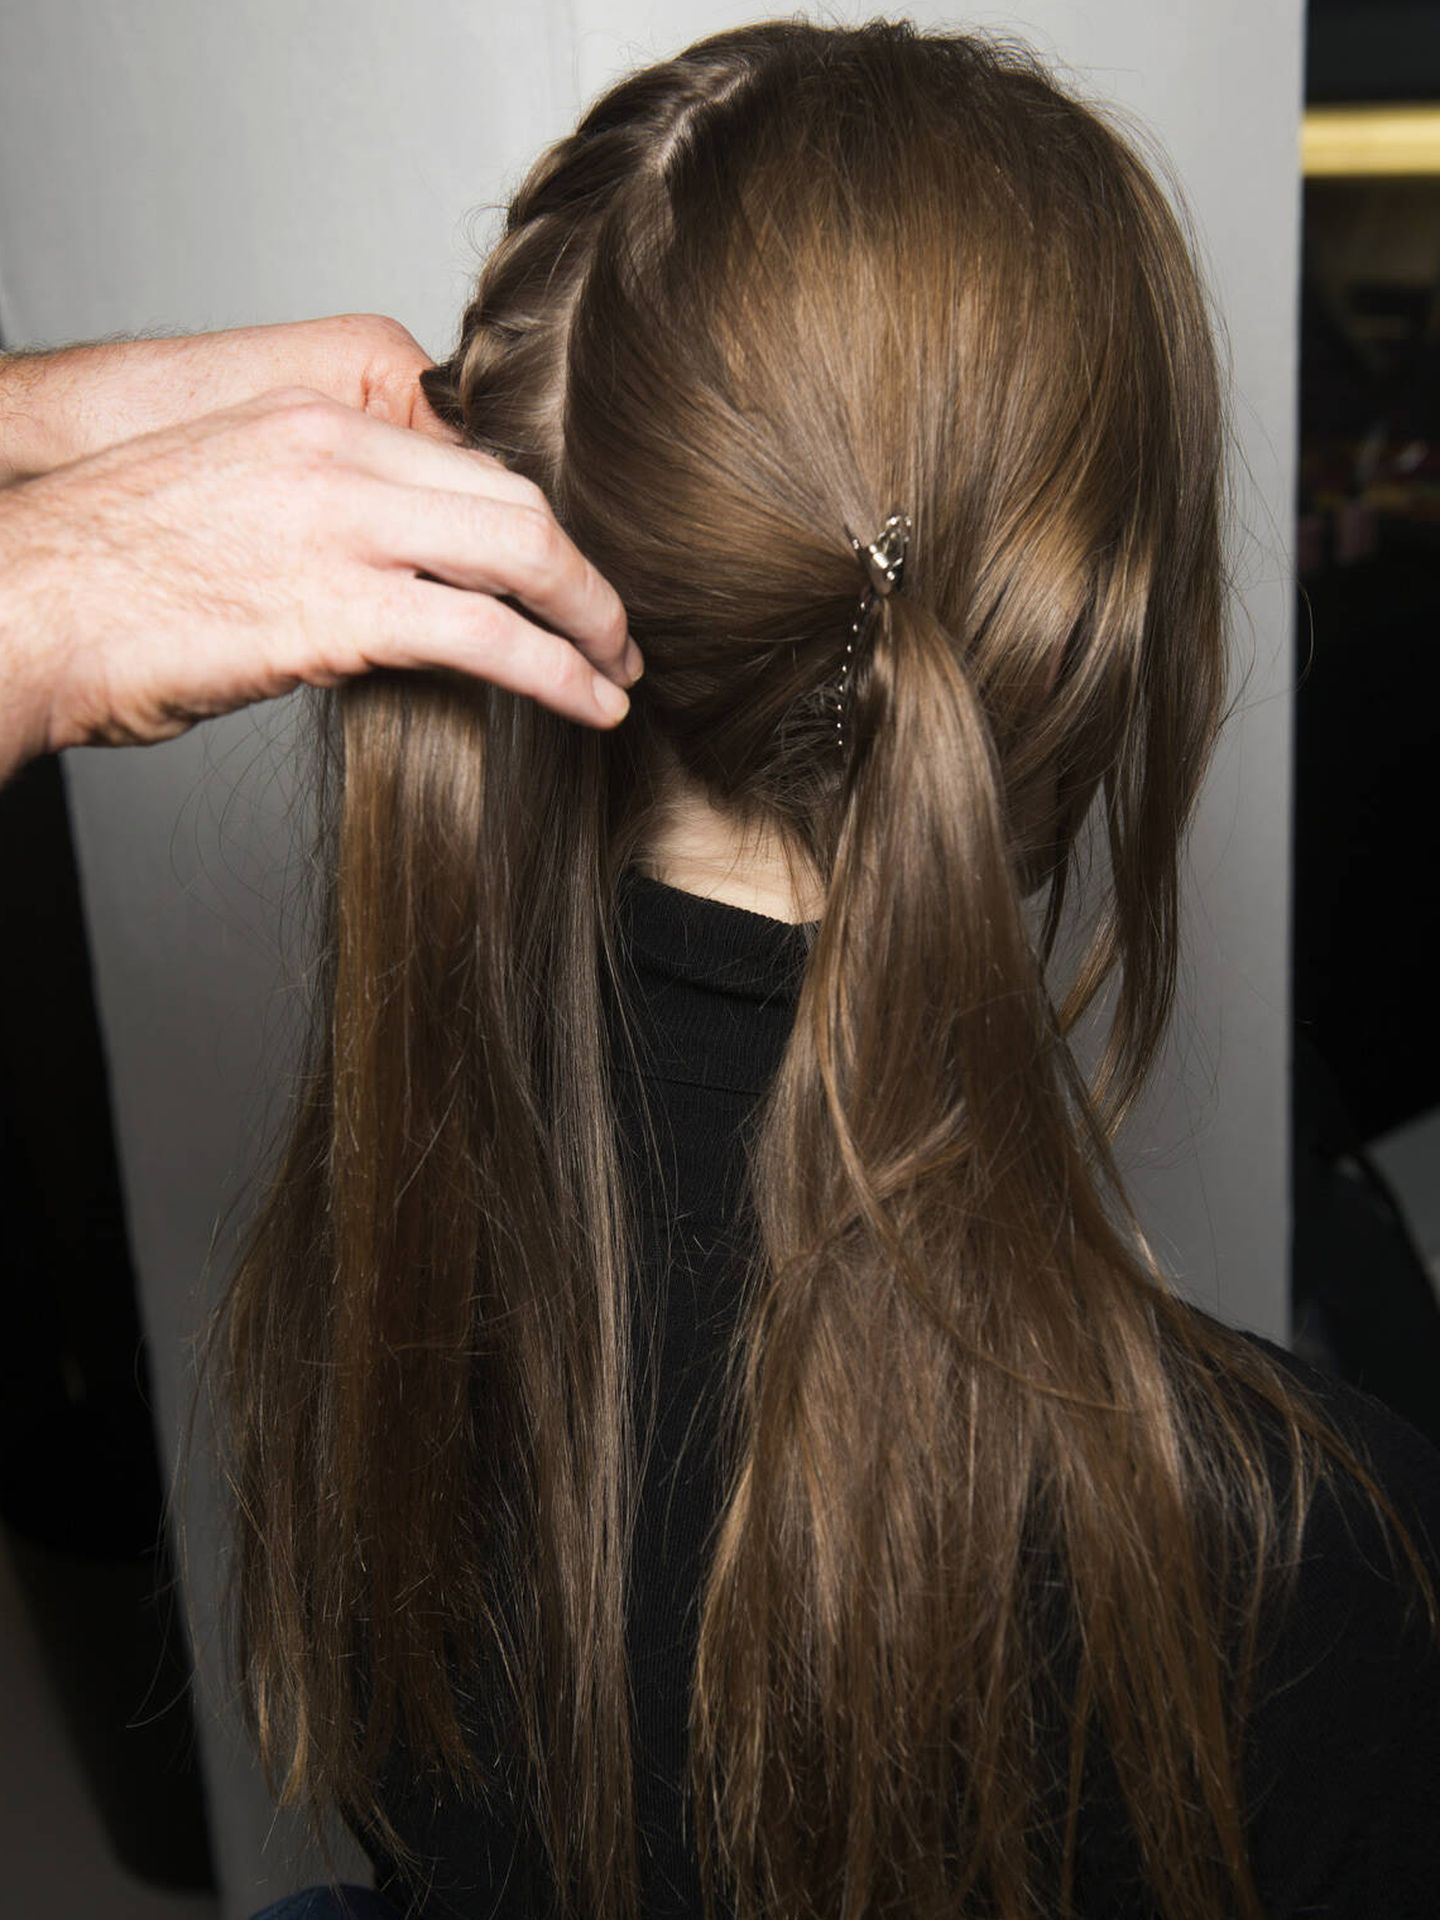 Aunque se trate de un peinado sencillo, seccionar el cabello es fundamental para realizar una correcta coleta 'criss-cross pigtail'. (imaxtree)